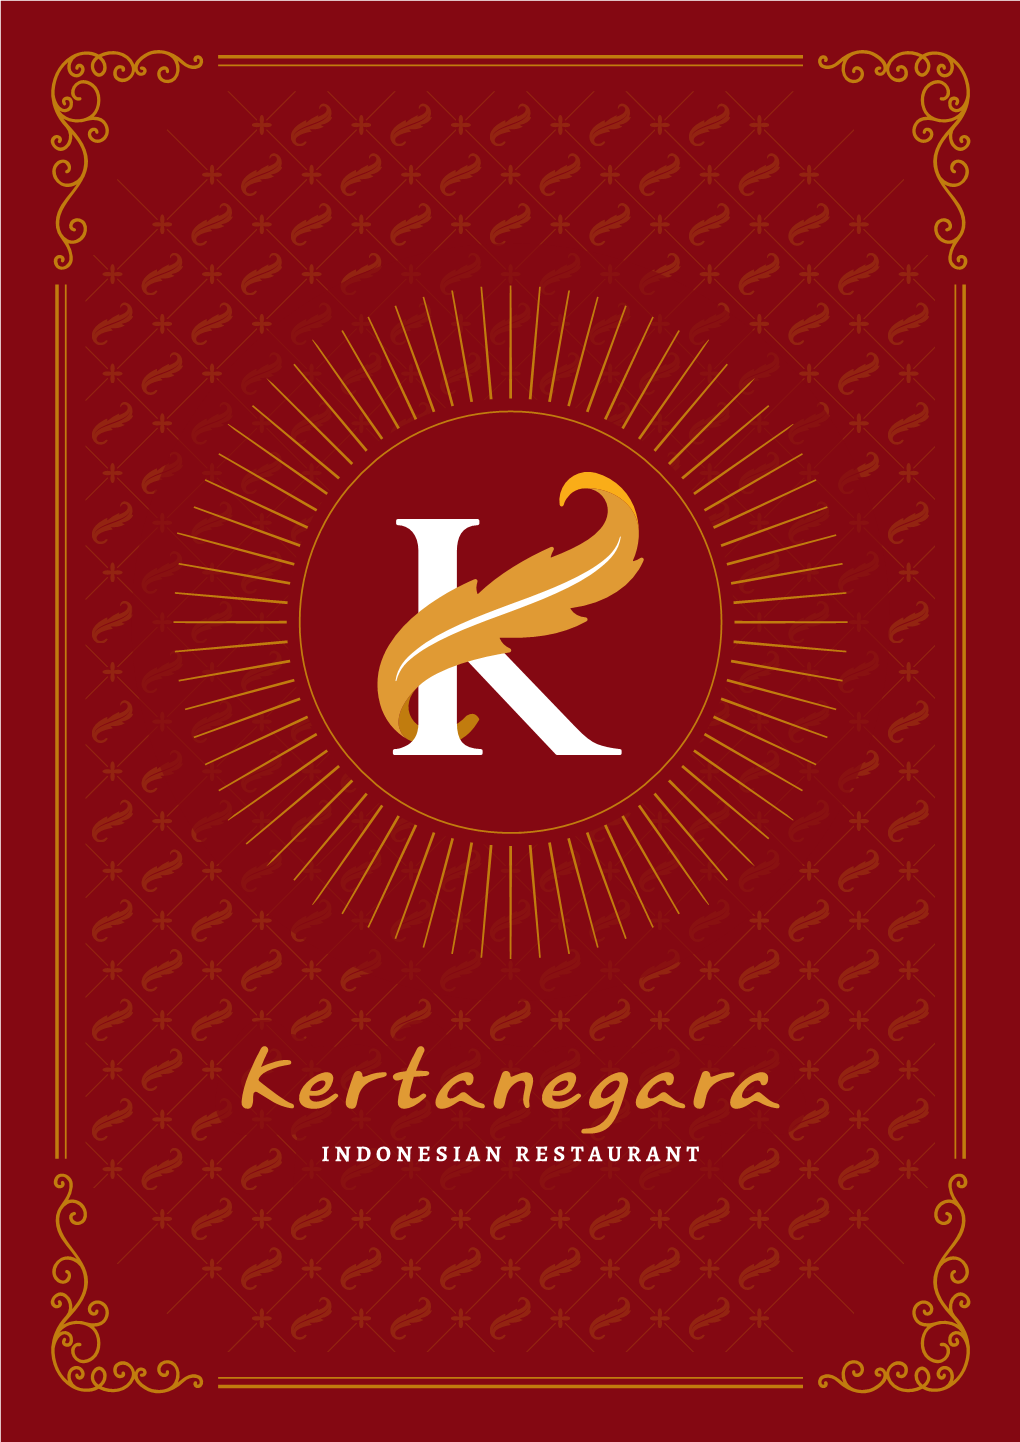 Kertanegara Indonesian Restaurant's Menu